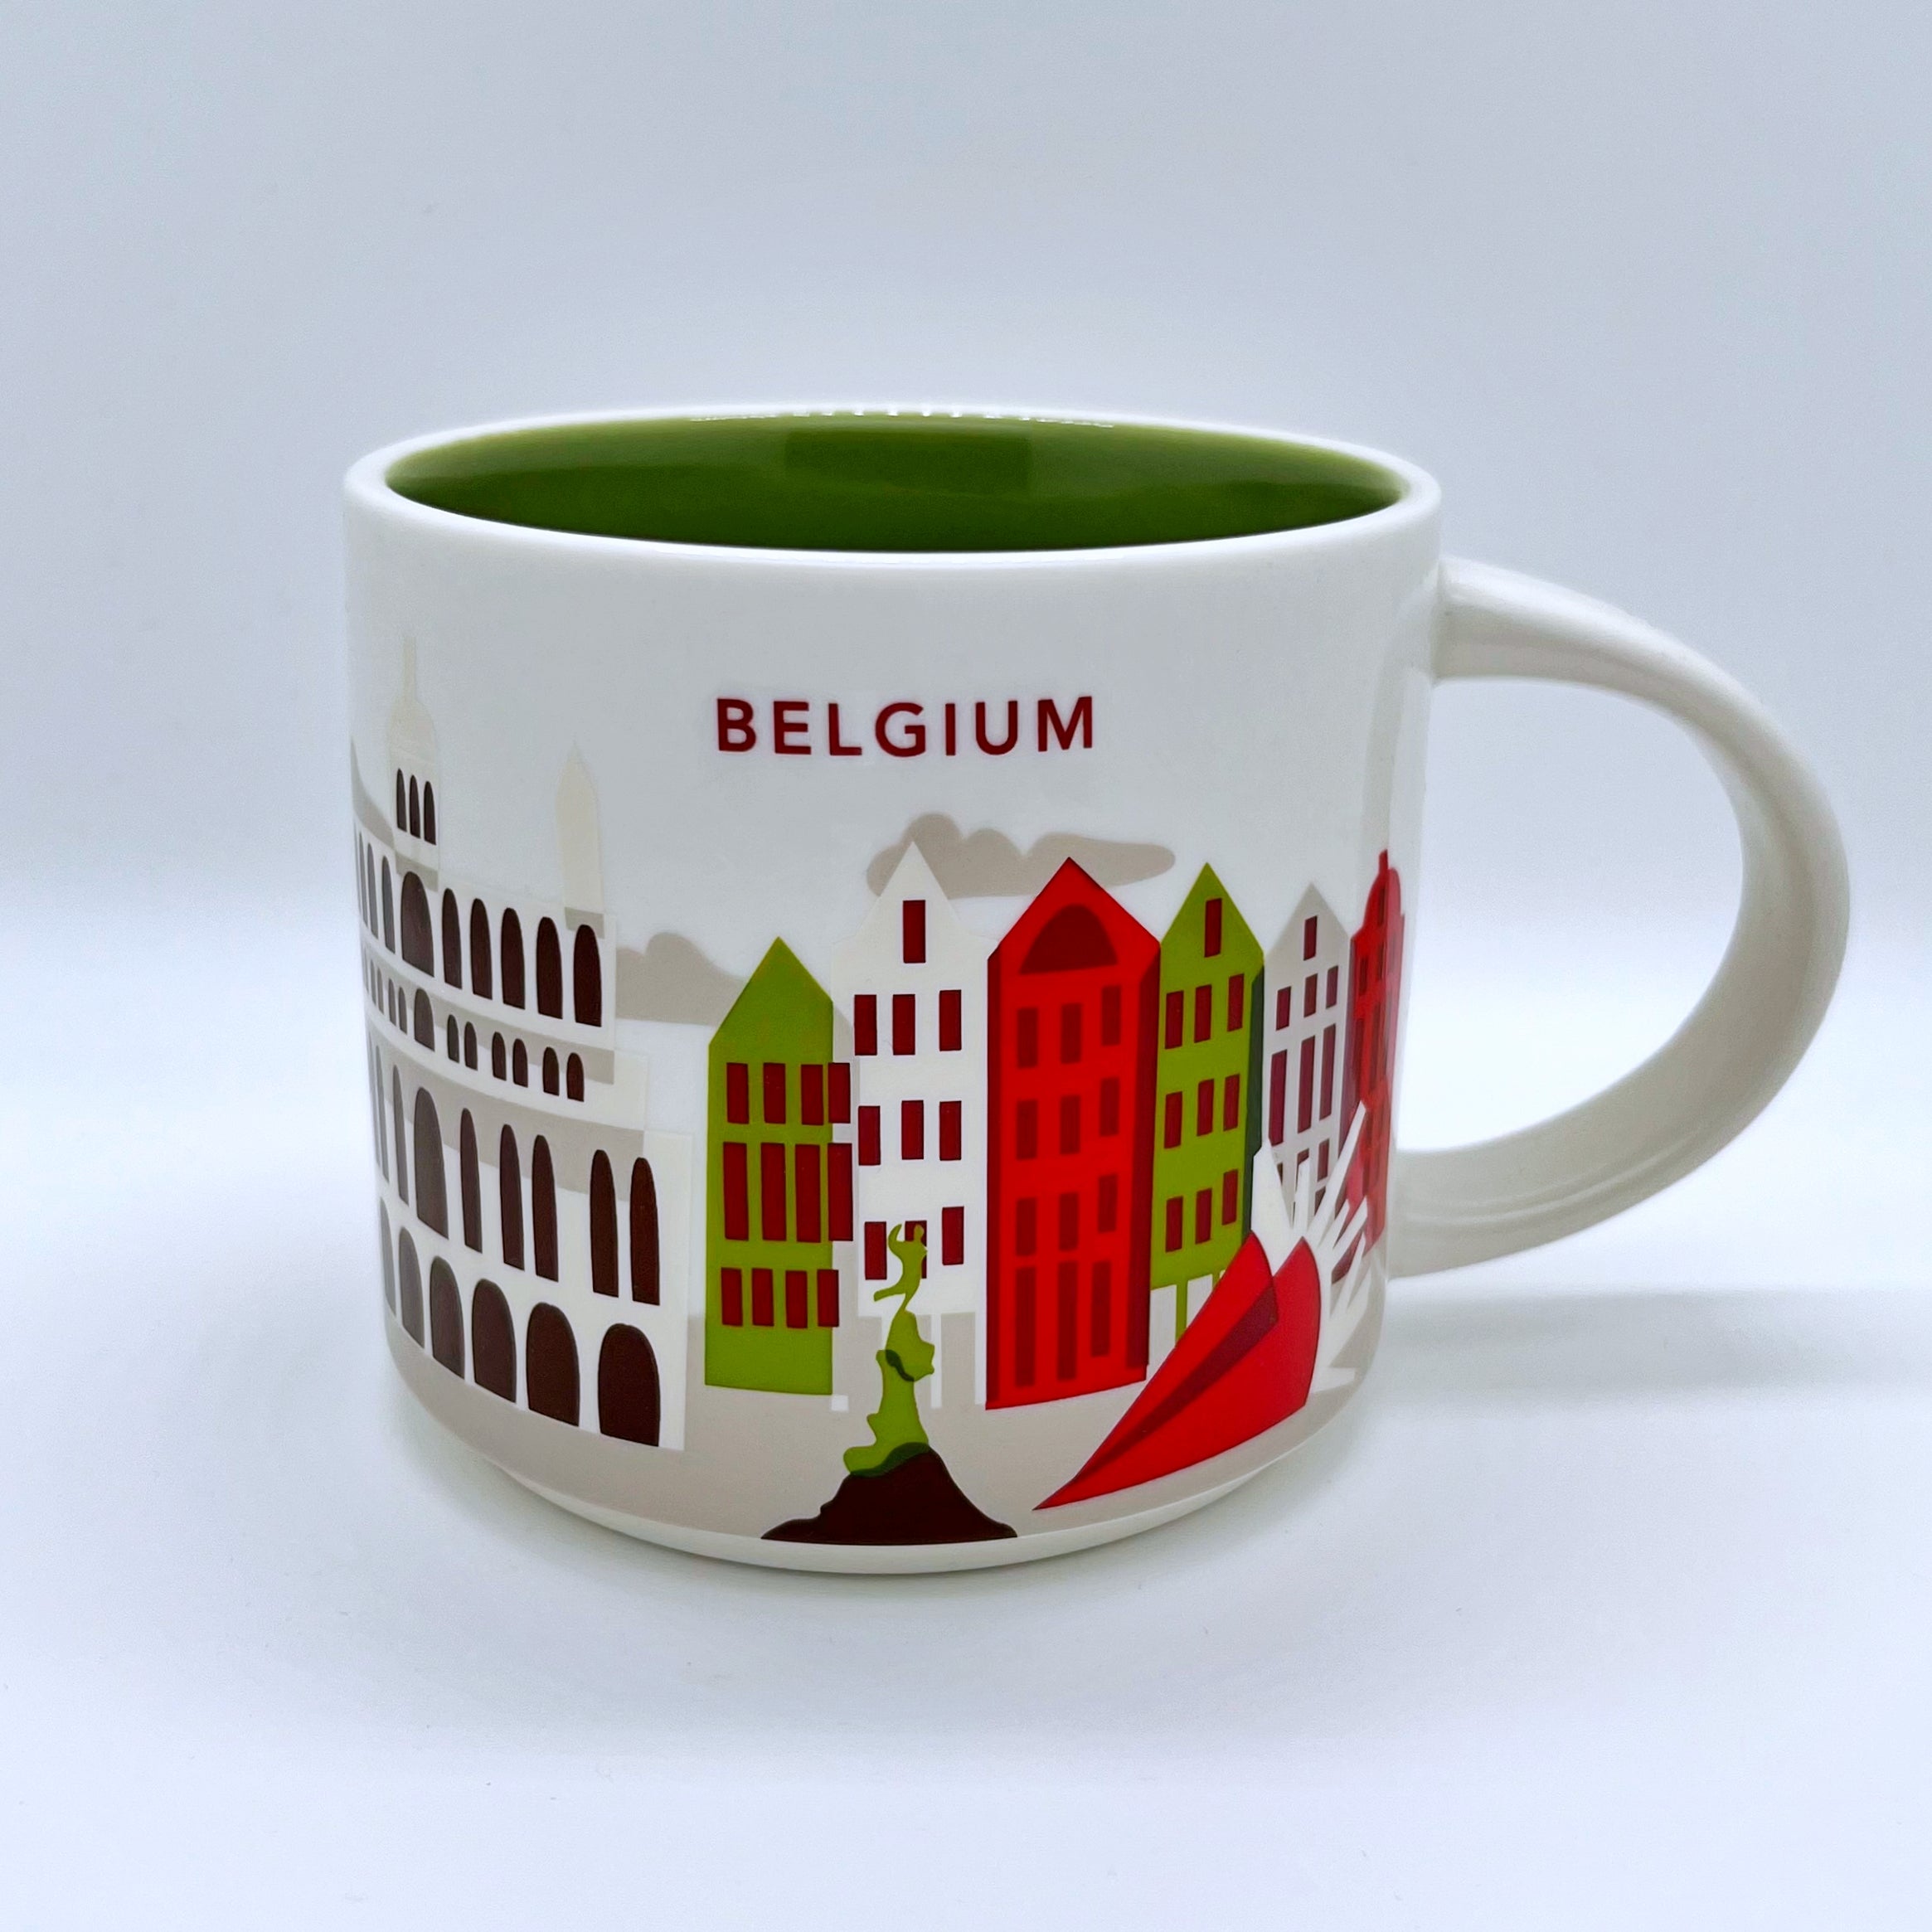 Kaffee Tee und Cappuccino Tasse von Starbucks mit gemalten Bildern aus dem Land Belgien